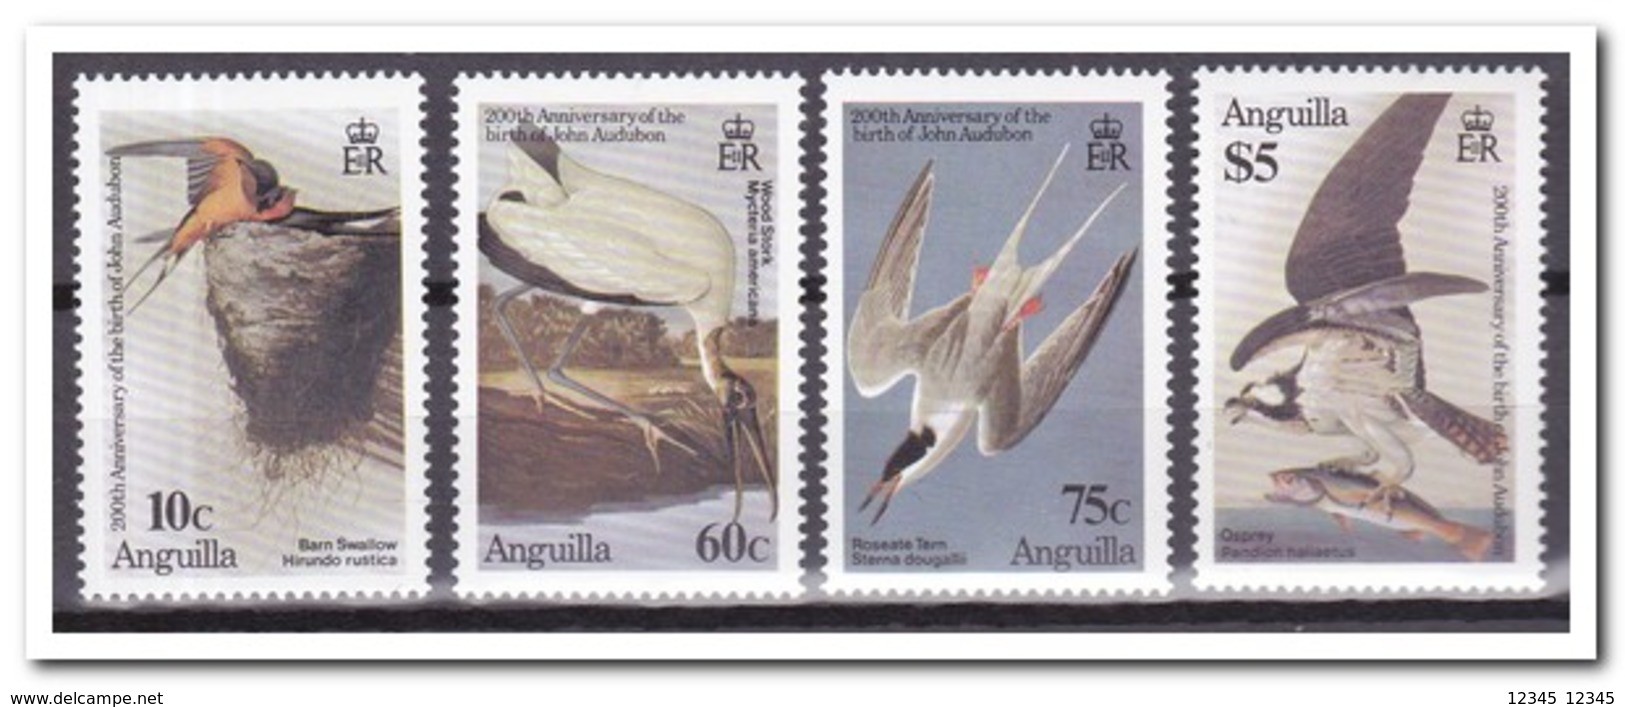 Anguilla 1985, Postfris MNH, Birds - Anguilla (1968-...)